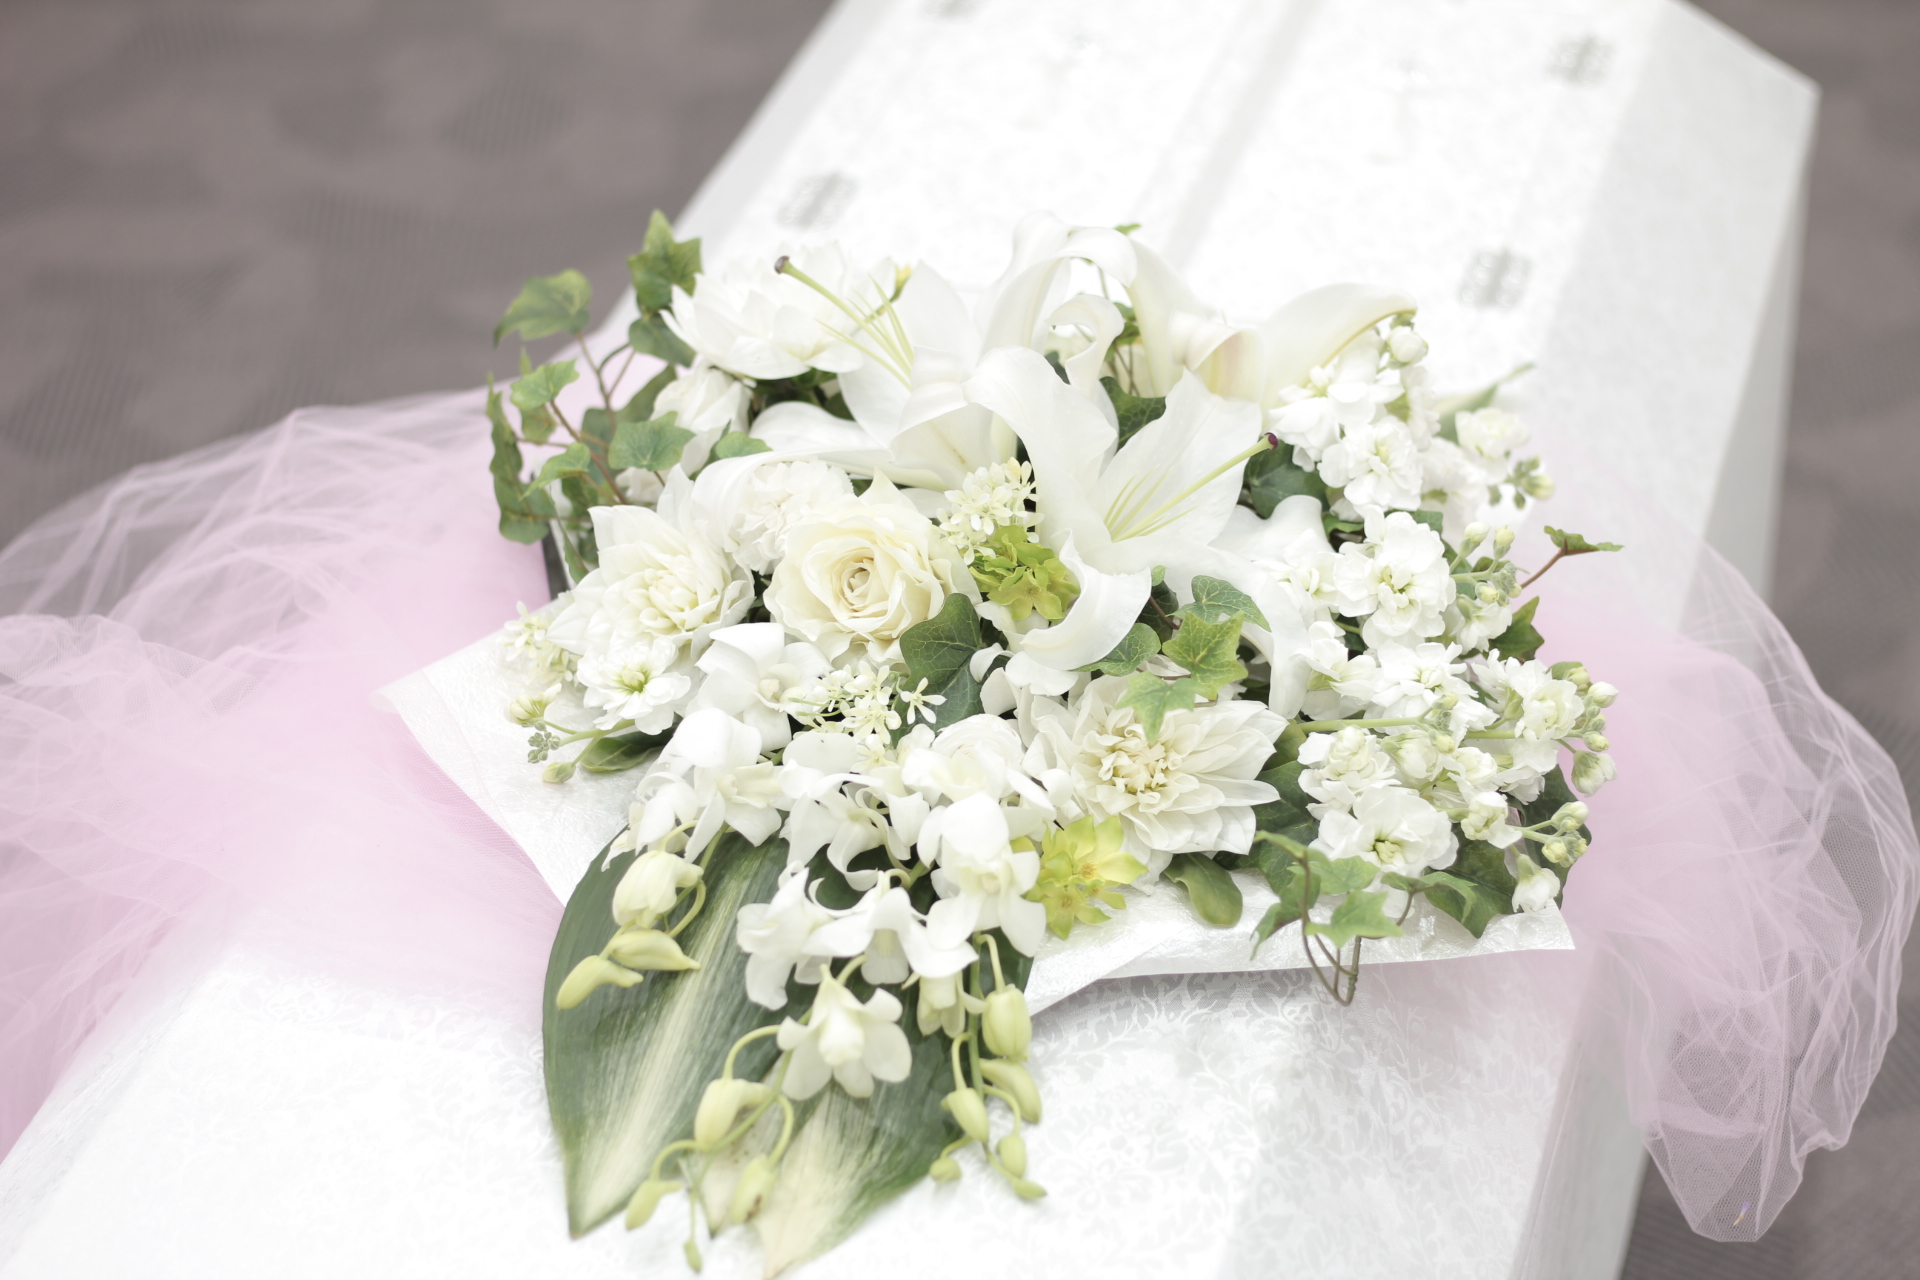 おてごろ葬 白いお別れの花束 おてごろ葬 福岡 大阪の直葬や火葬式などの格安葬儀